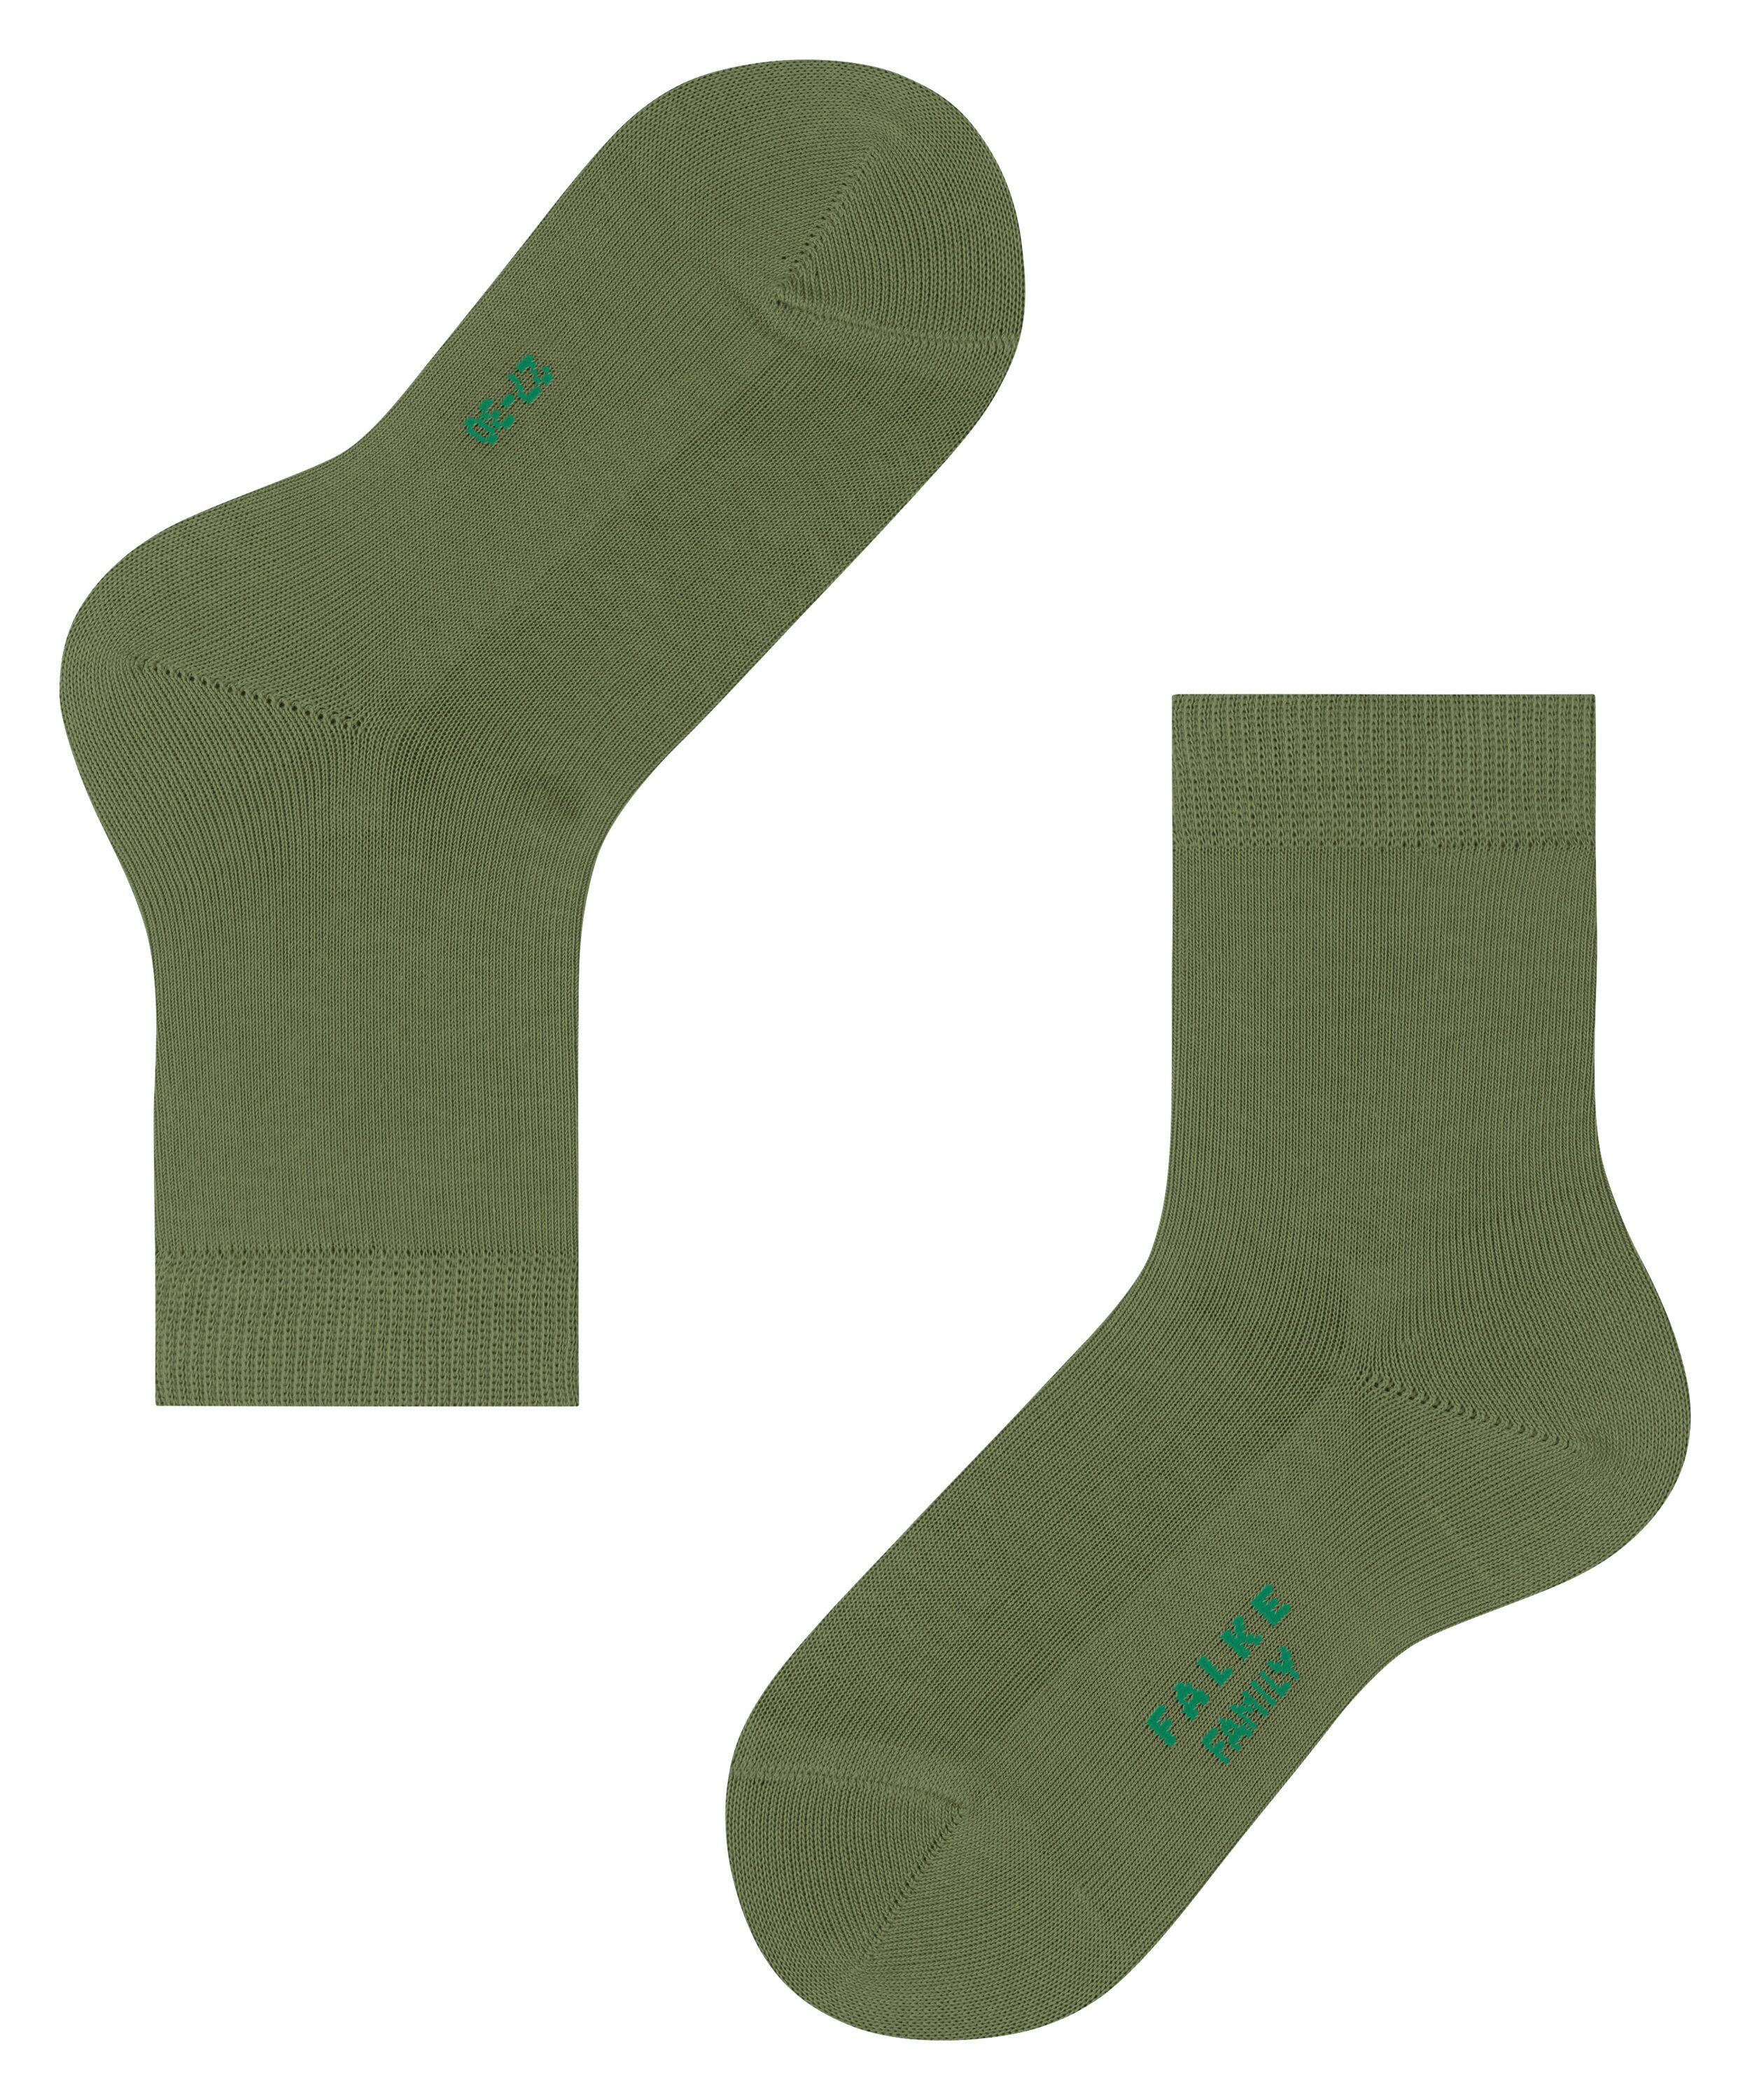 Family sern (1-Paar) green FALKE (7681) Socken